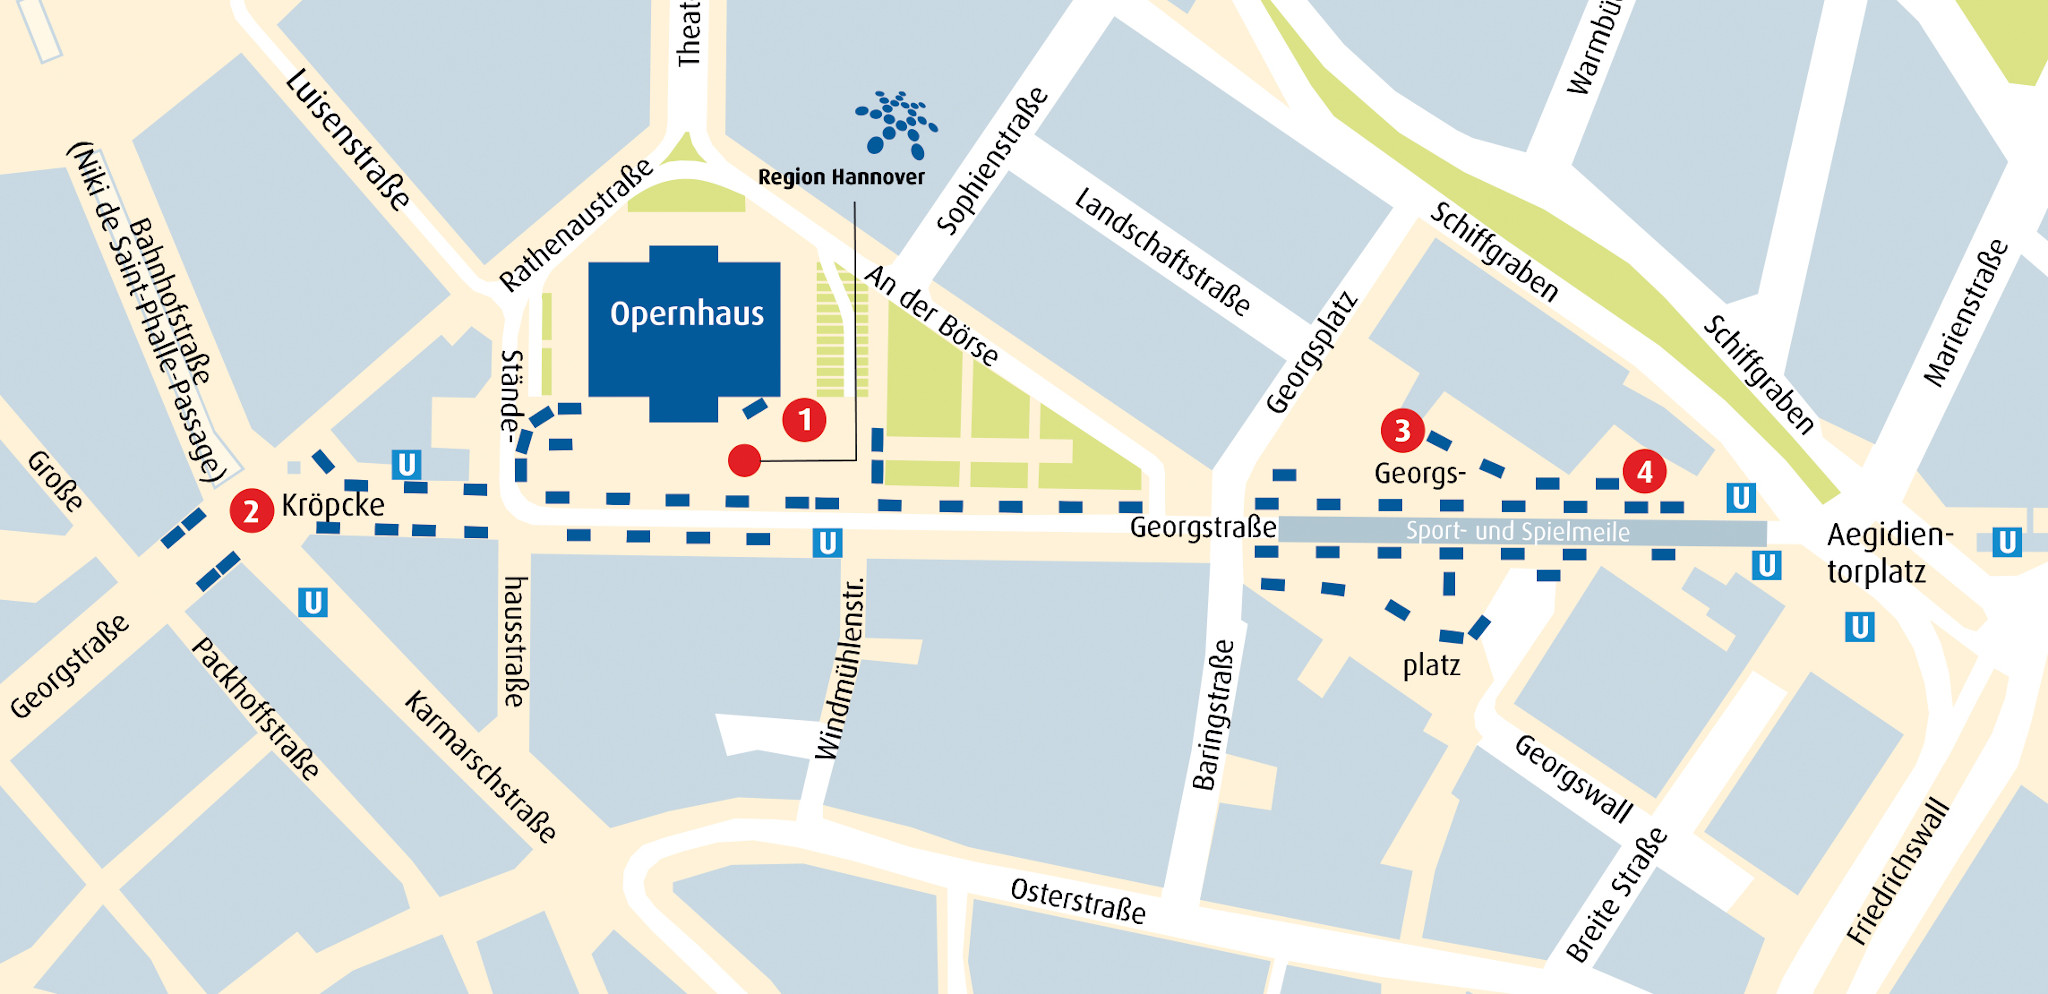 Plan des Entdeckerfestes in Hannovers Innenstadt von Kröpcke bis Aegi